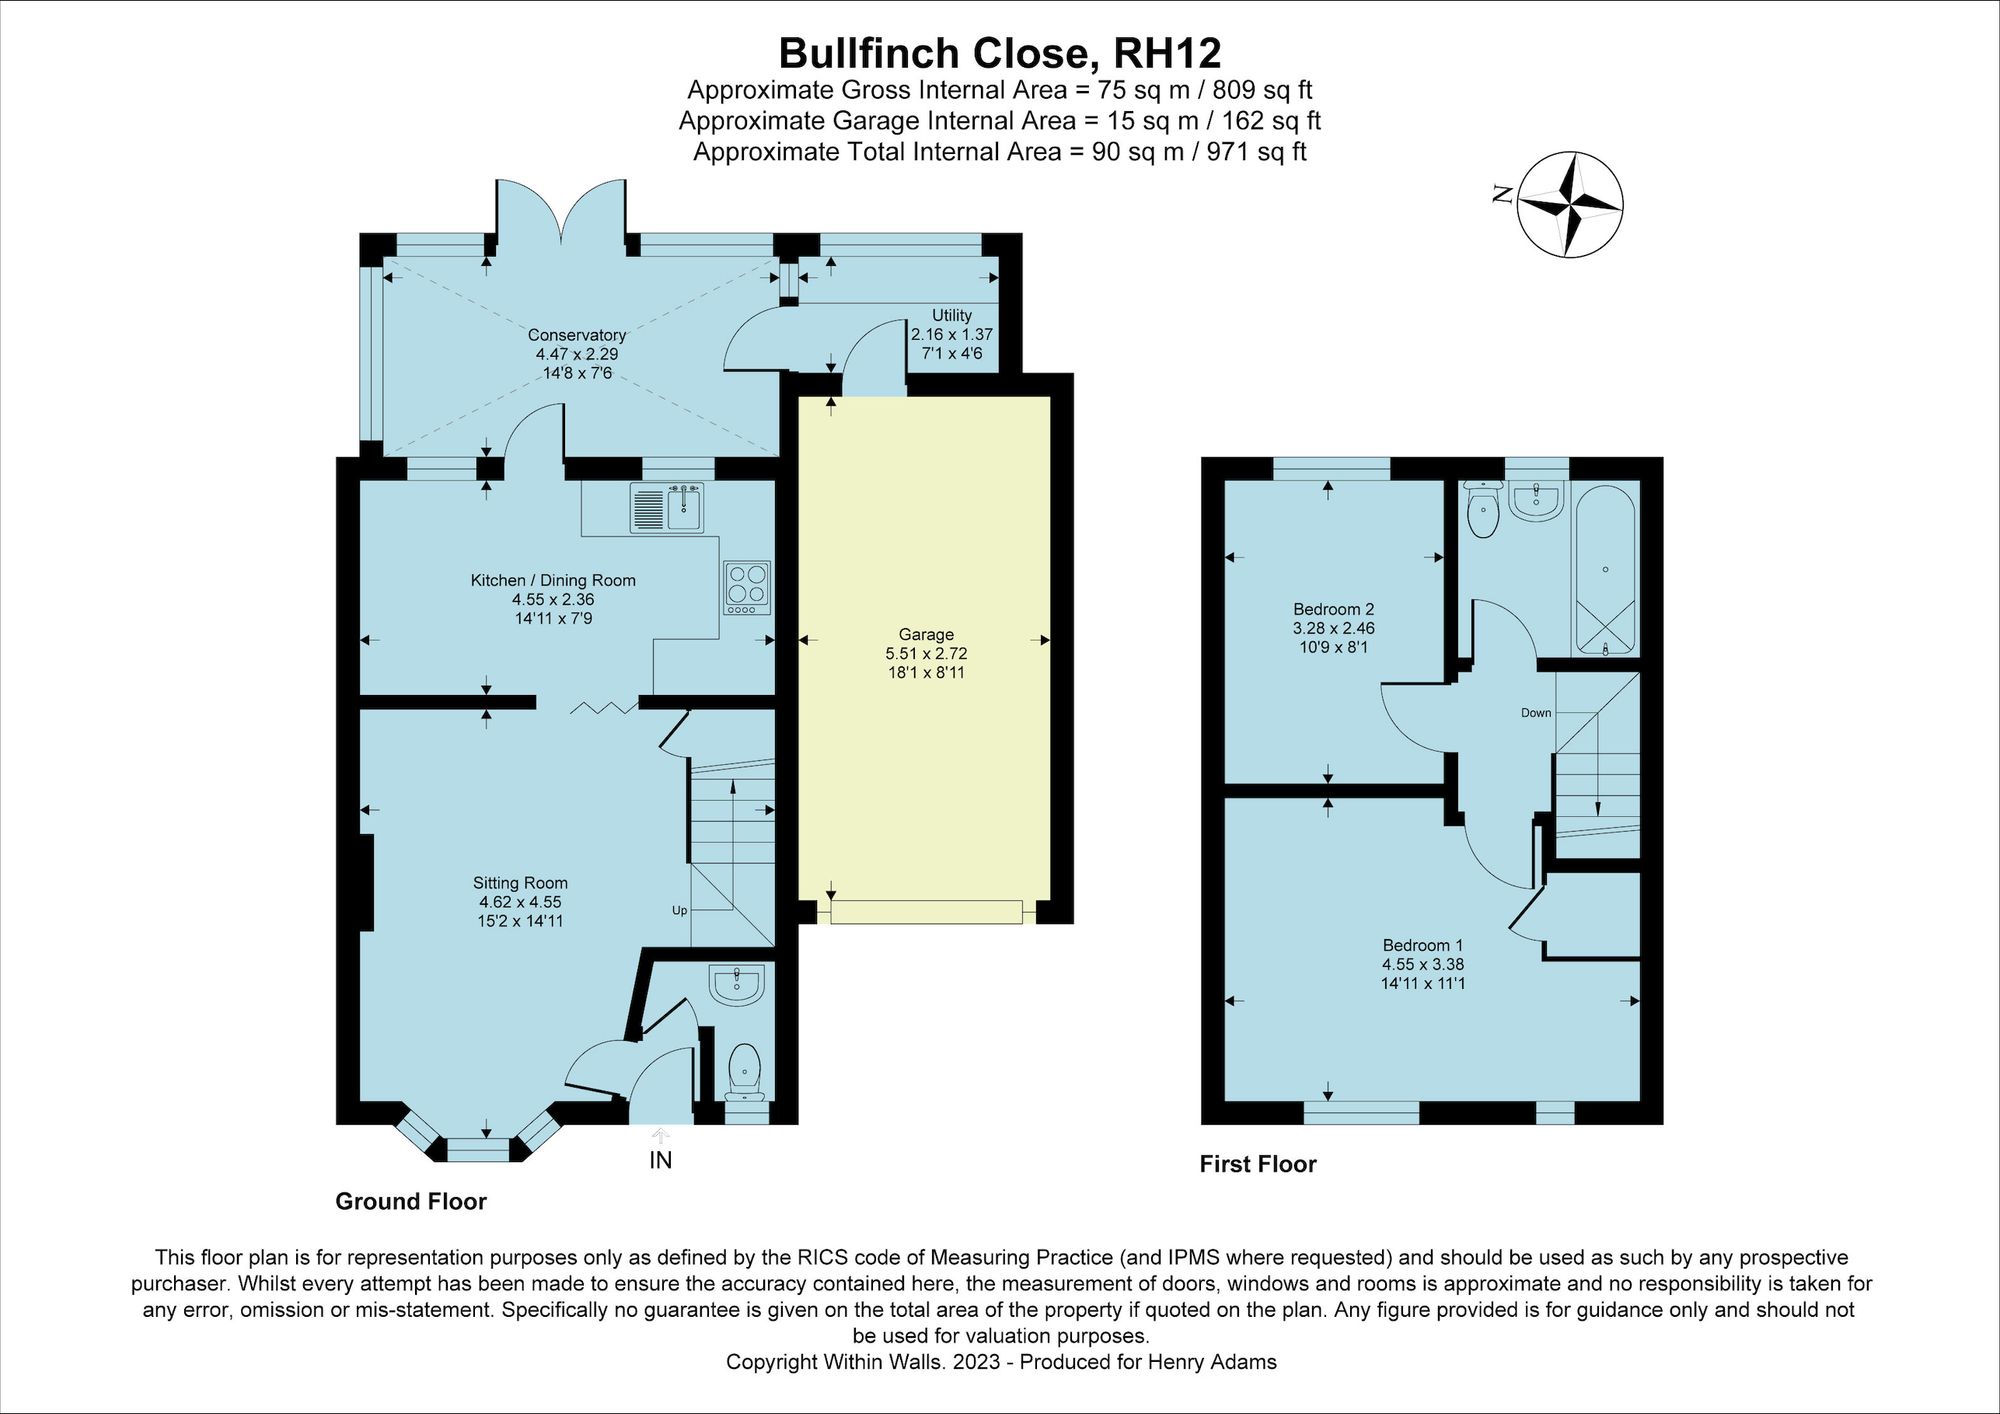 Bullfinch Close, Horsham, RH12 floorplans